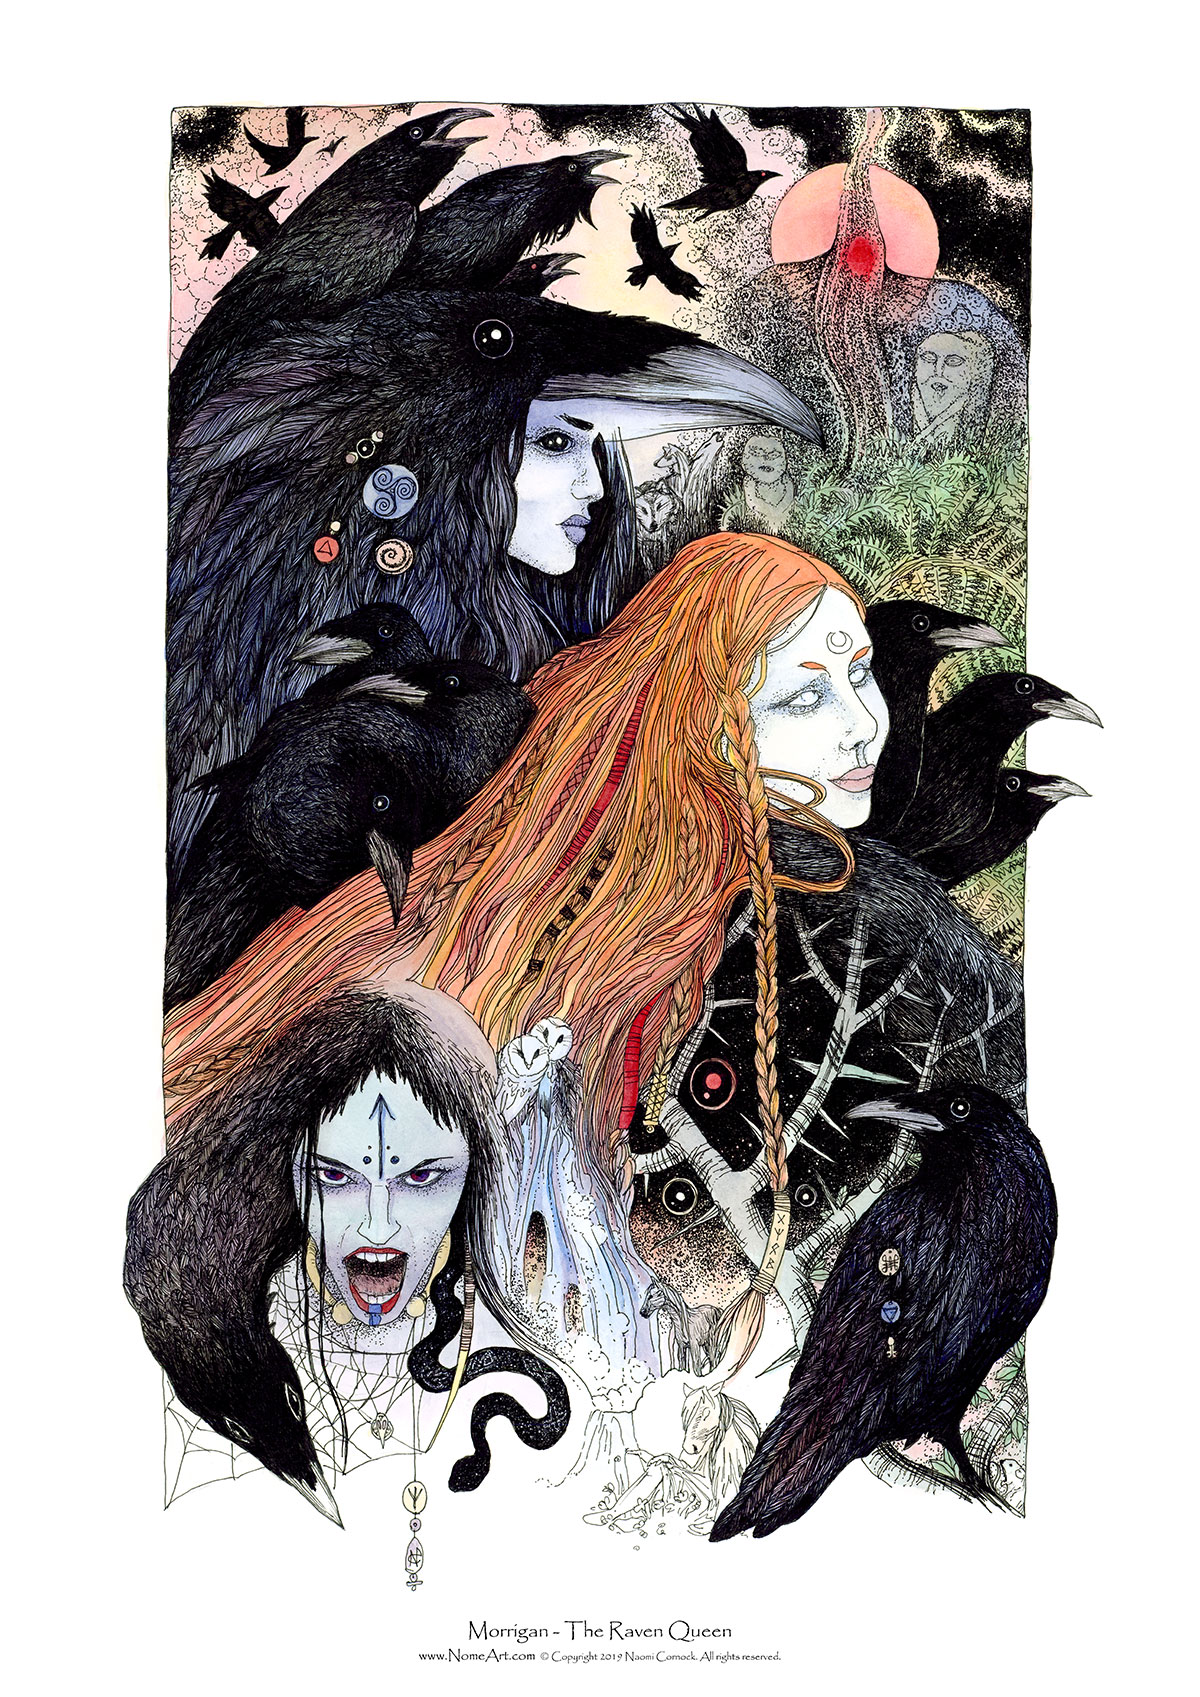 Morrigan - The Raven Queen